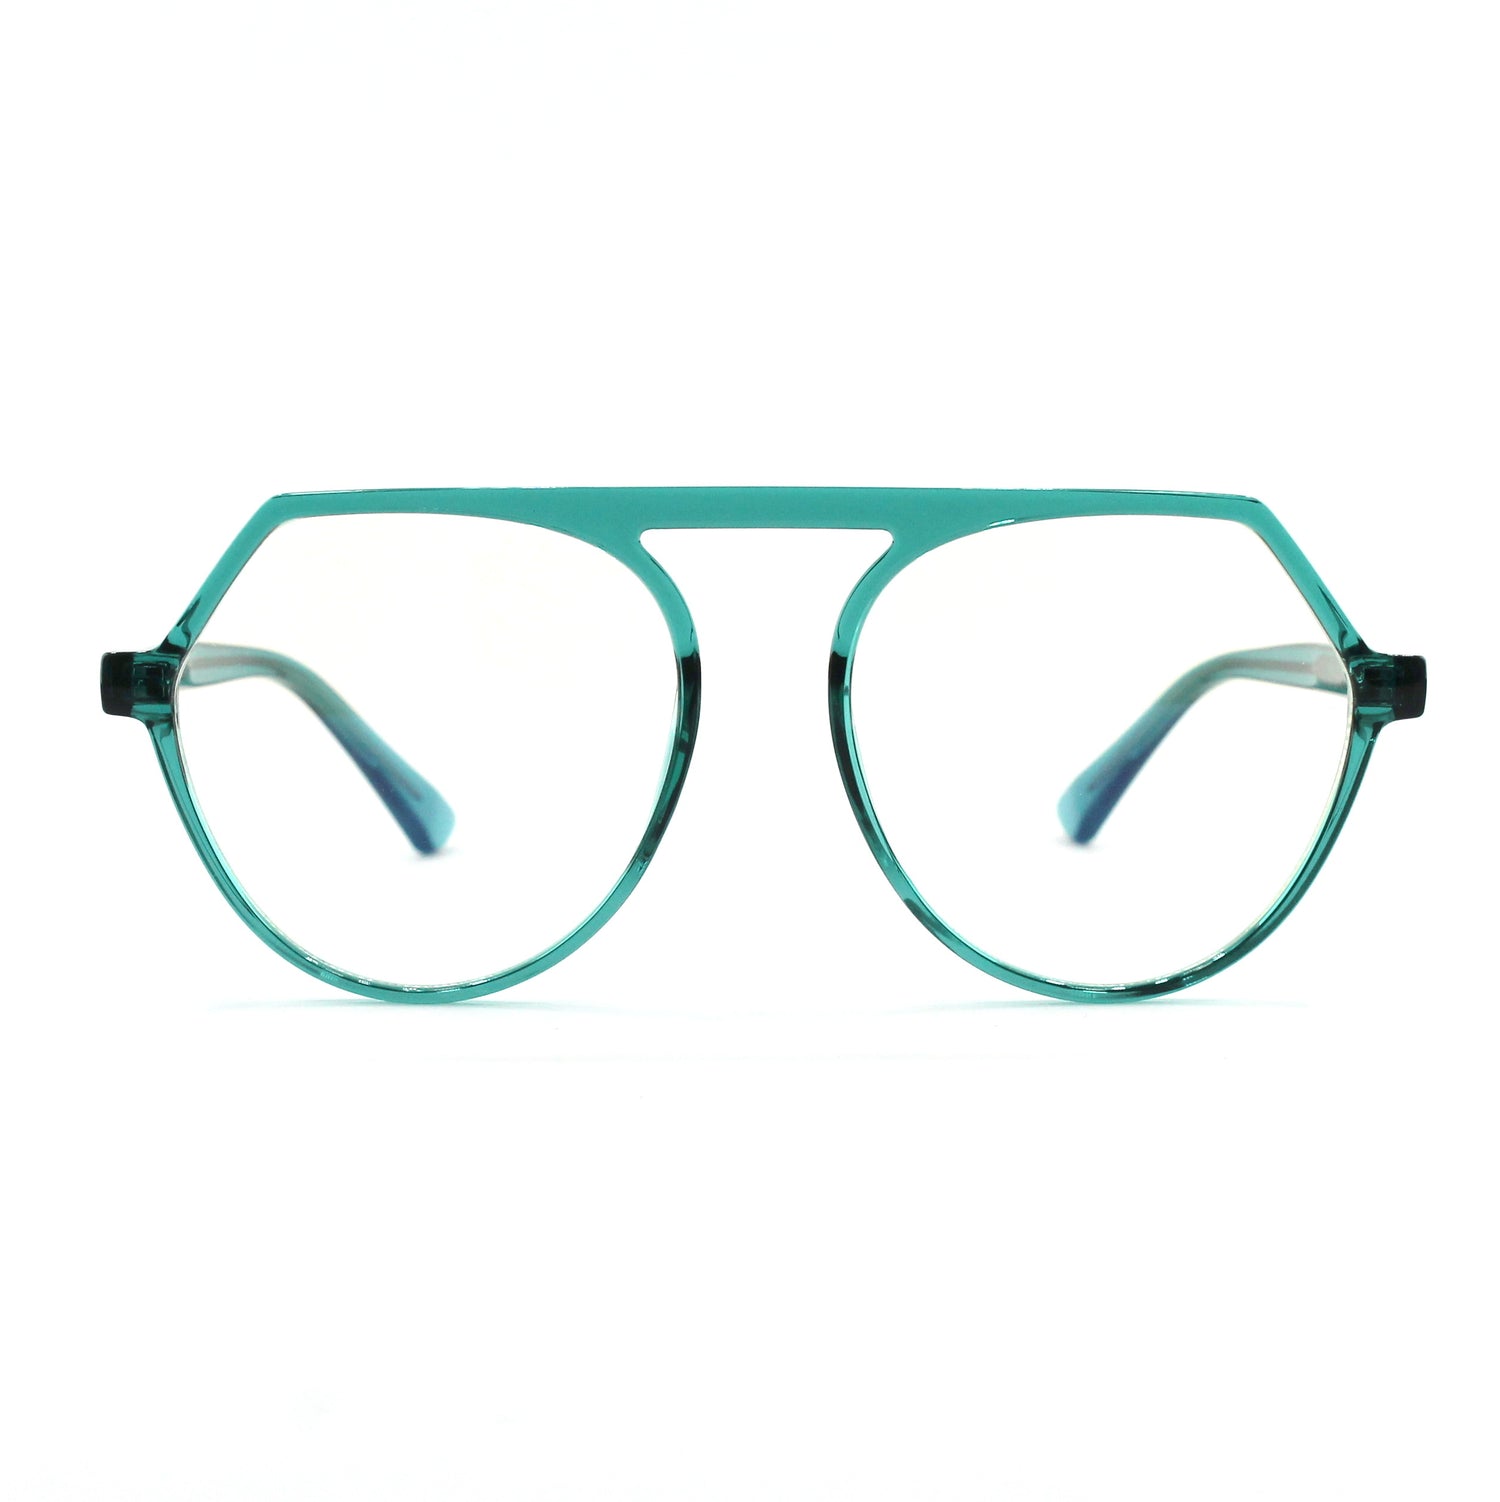 Ottika Care - Blue Light Blocking Glasses -  Adult | 2033